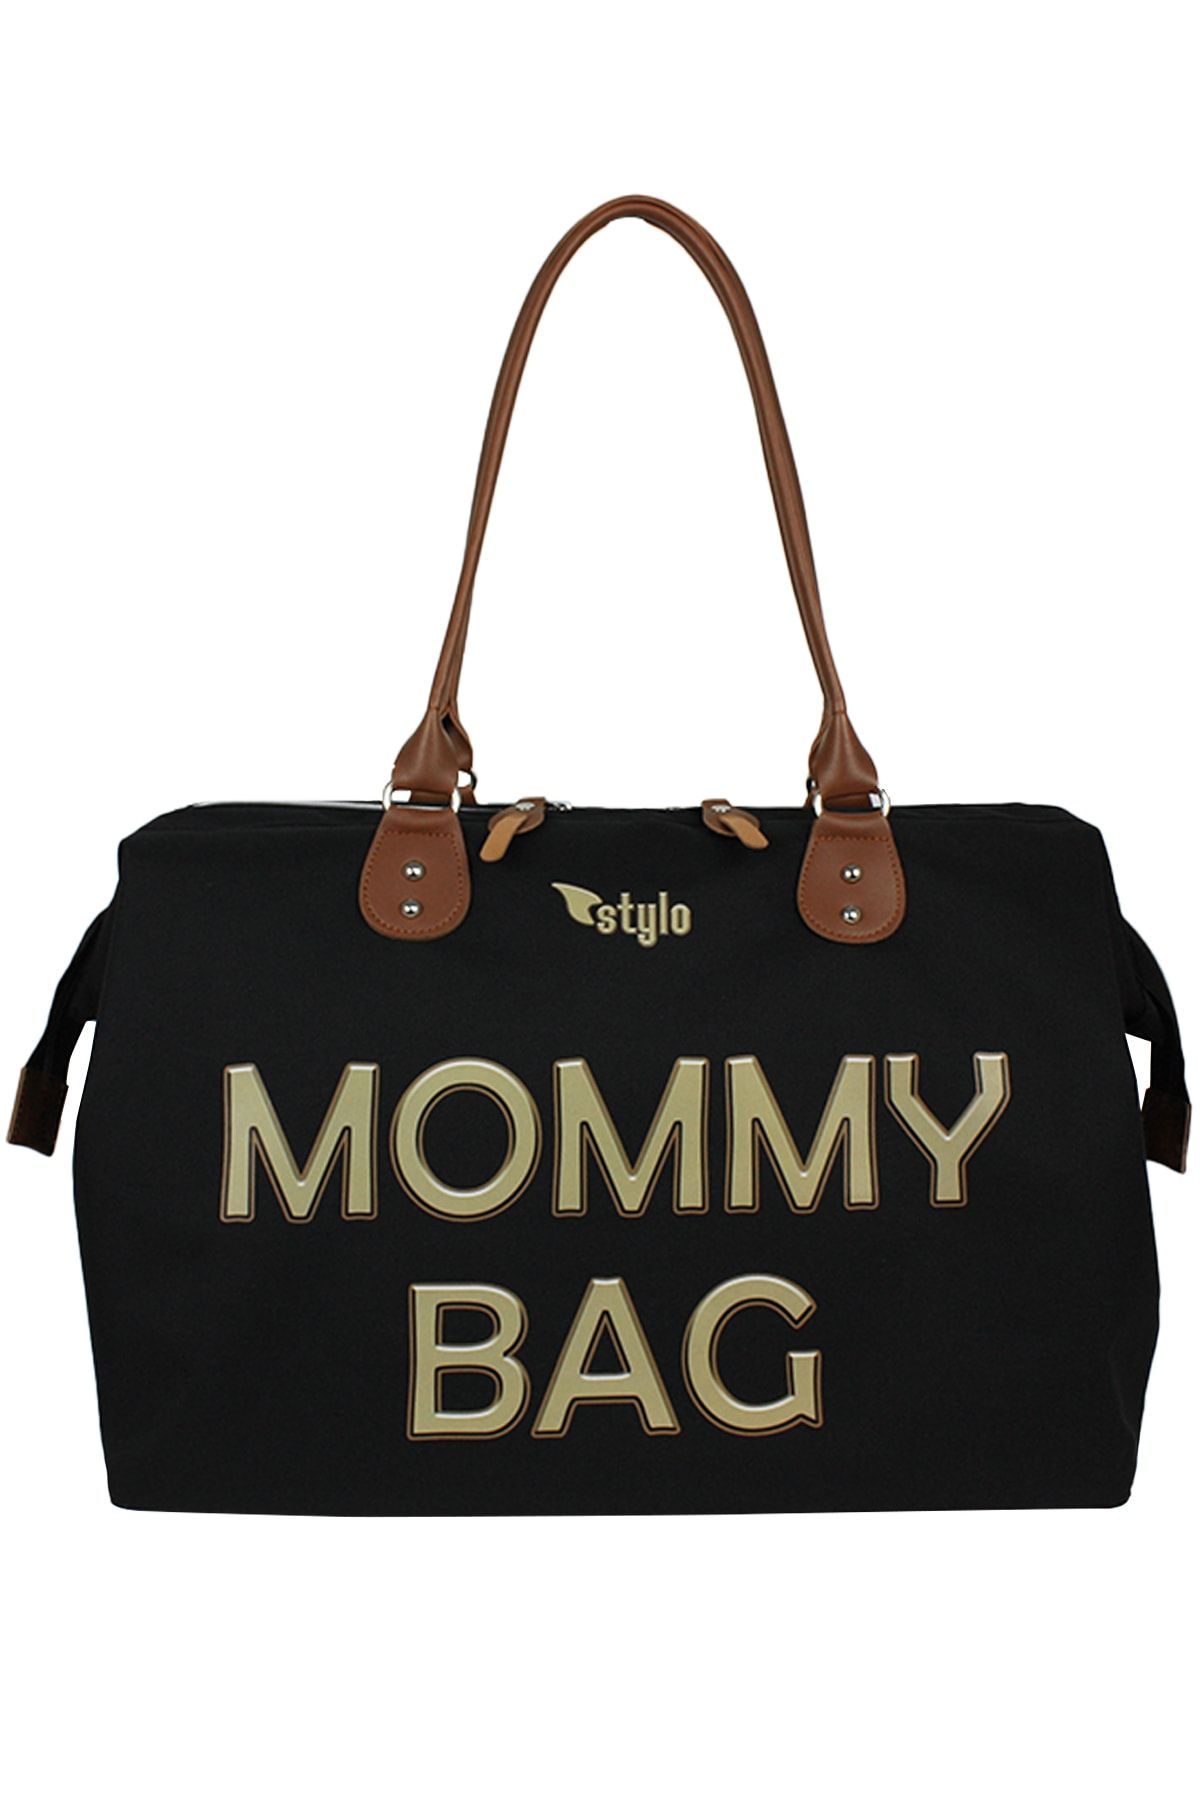 Stylo Mommy Bag 3d Anne Bebek Bakım Çantası - Karamel Baskı